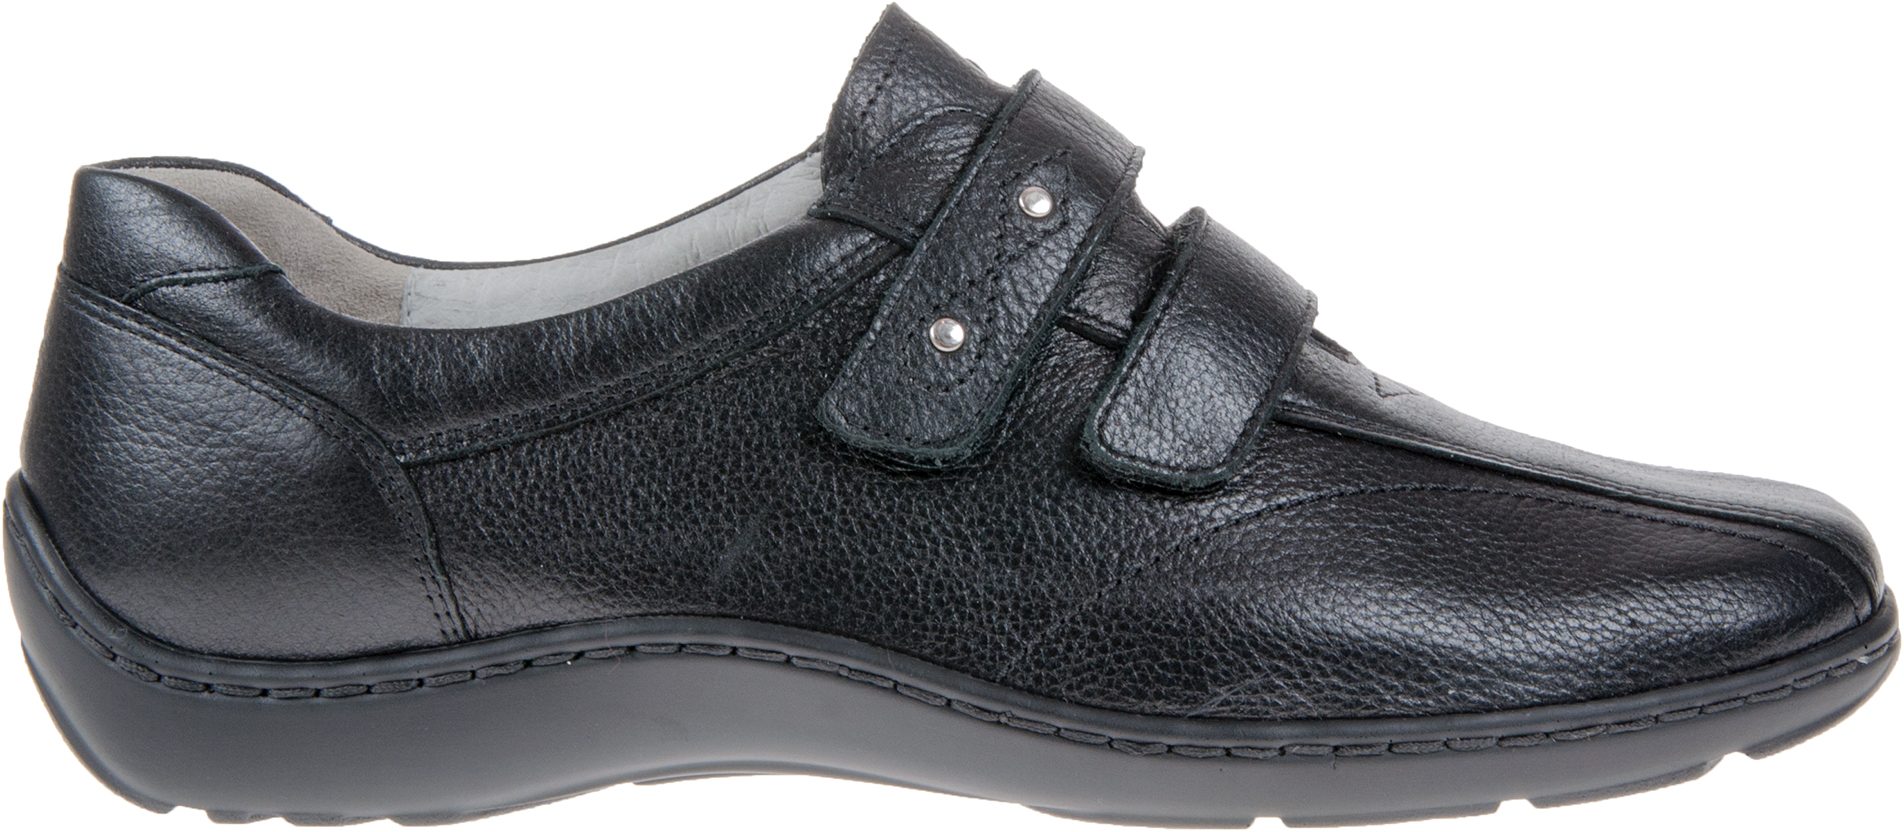 Waldlaufer Henni 301 Black Leather 496301 172 001 - Everyday Shoes ...